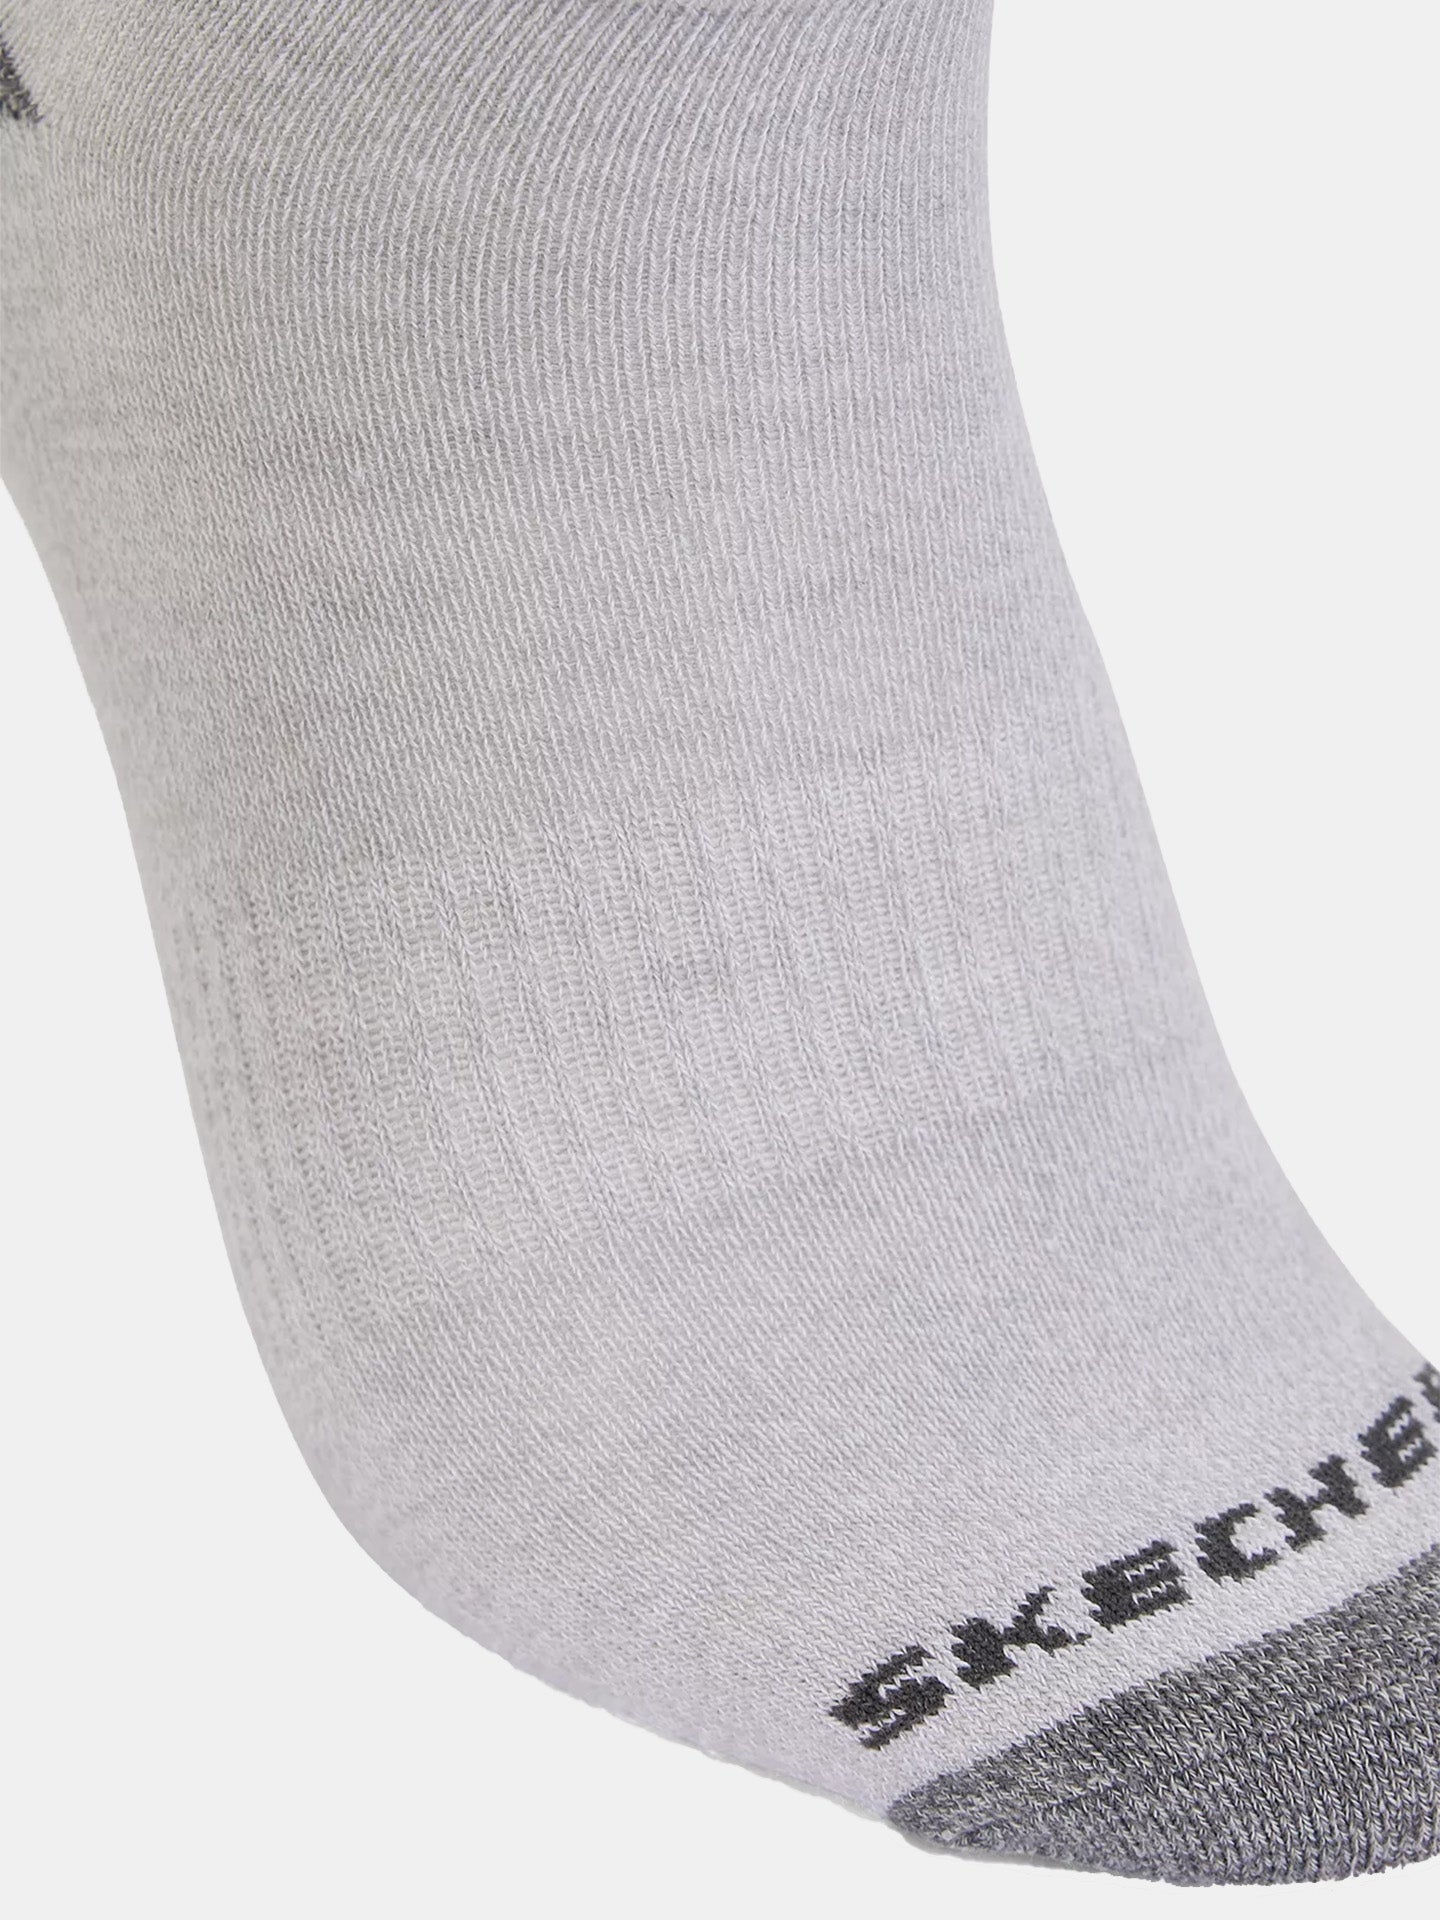 Skechers Men's 6 Pack Crew Socks